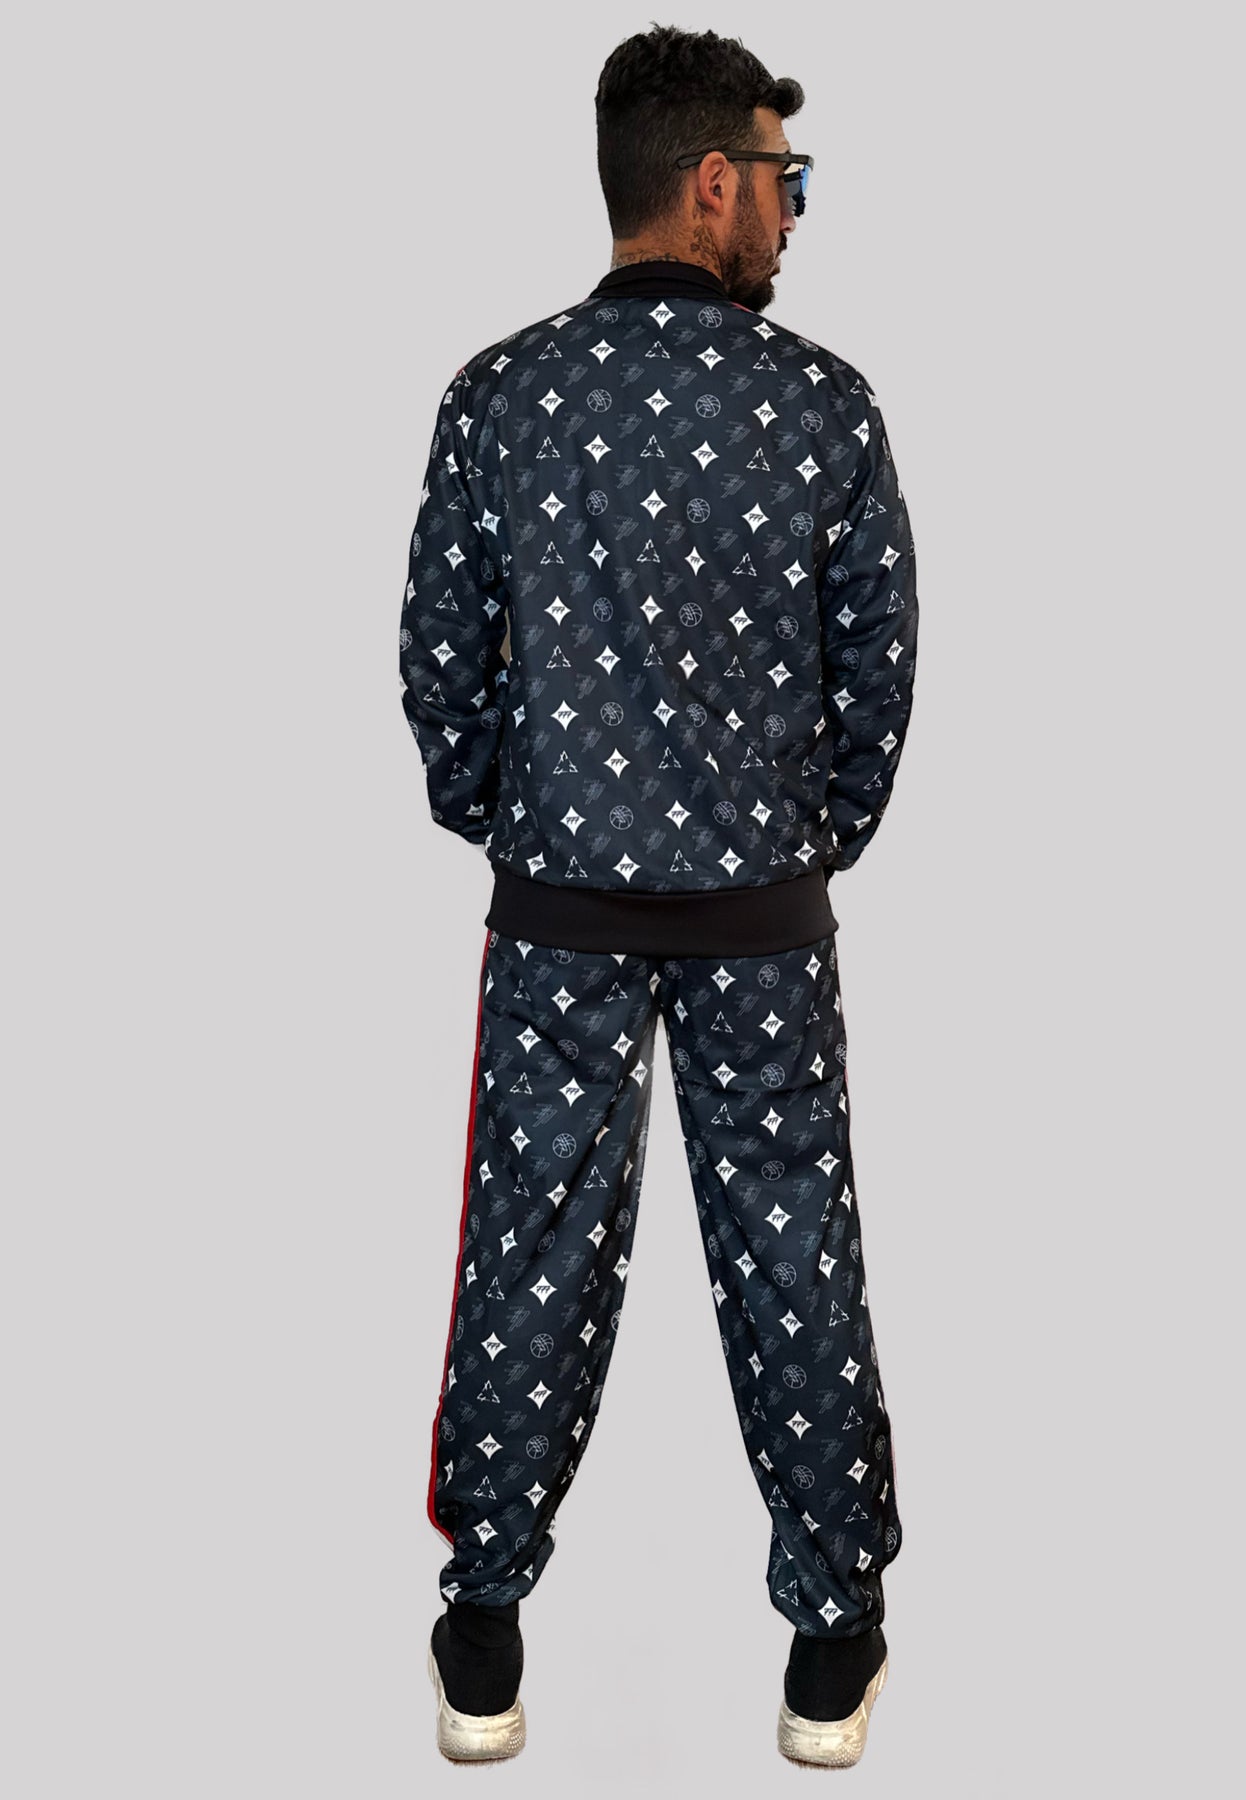 Louis Vuitton XL NBA maschile 2 Giacca in maglione con cerniera e